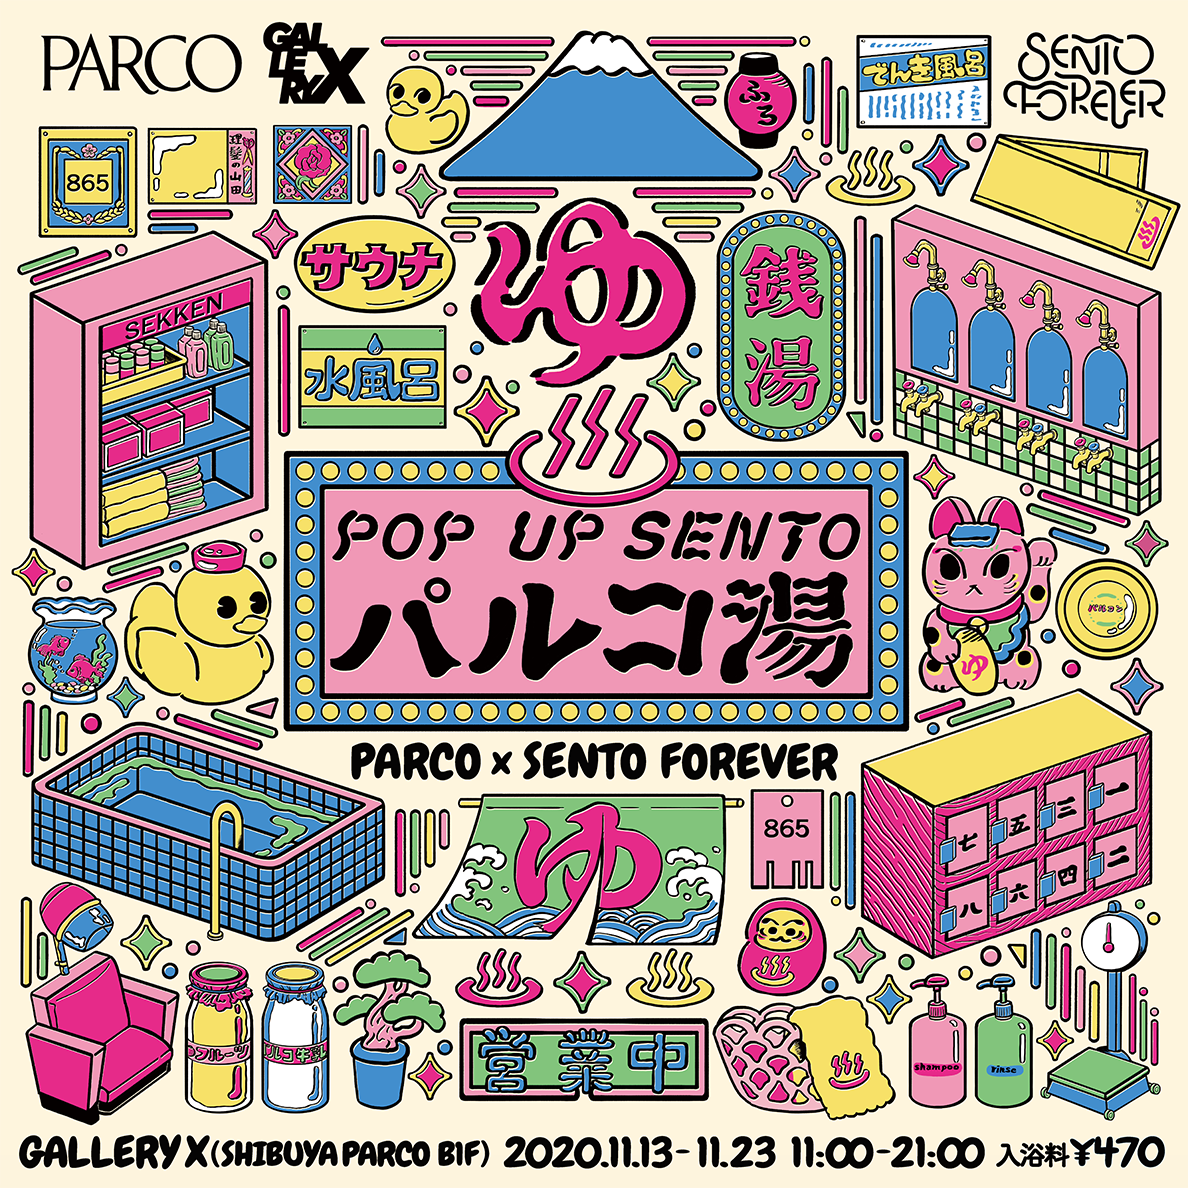 渋谷PARCO 1周年企画『POP UP SENTO パルコ湯』出店中！